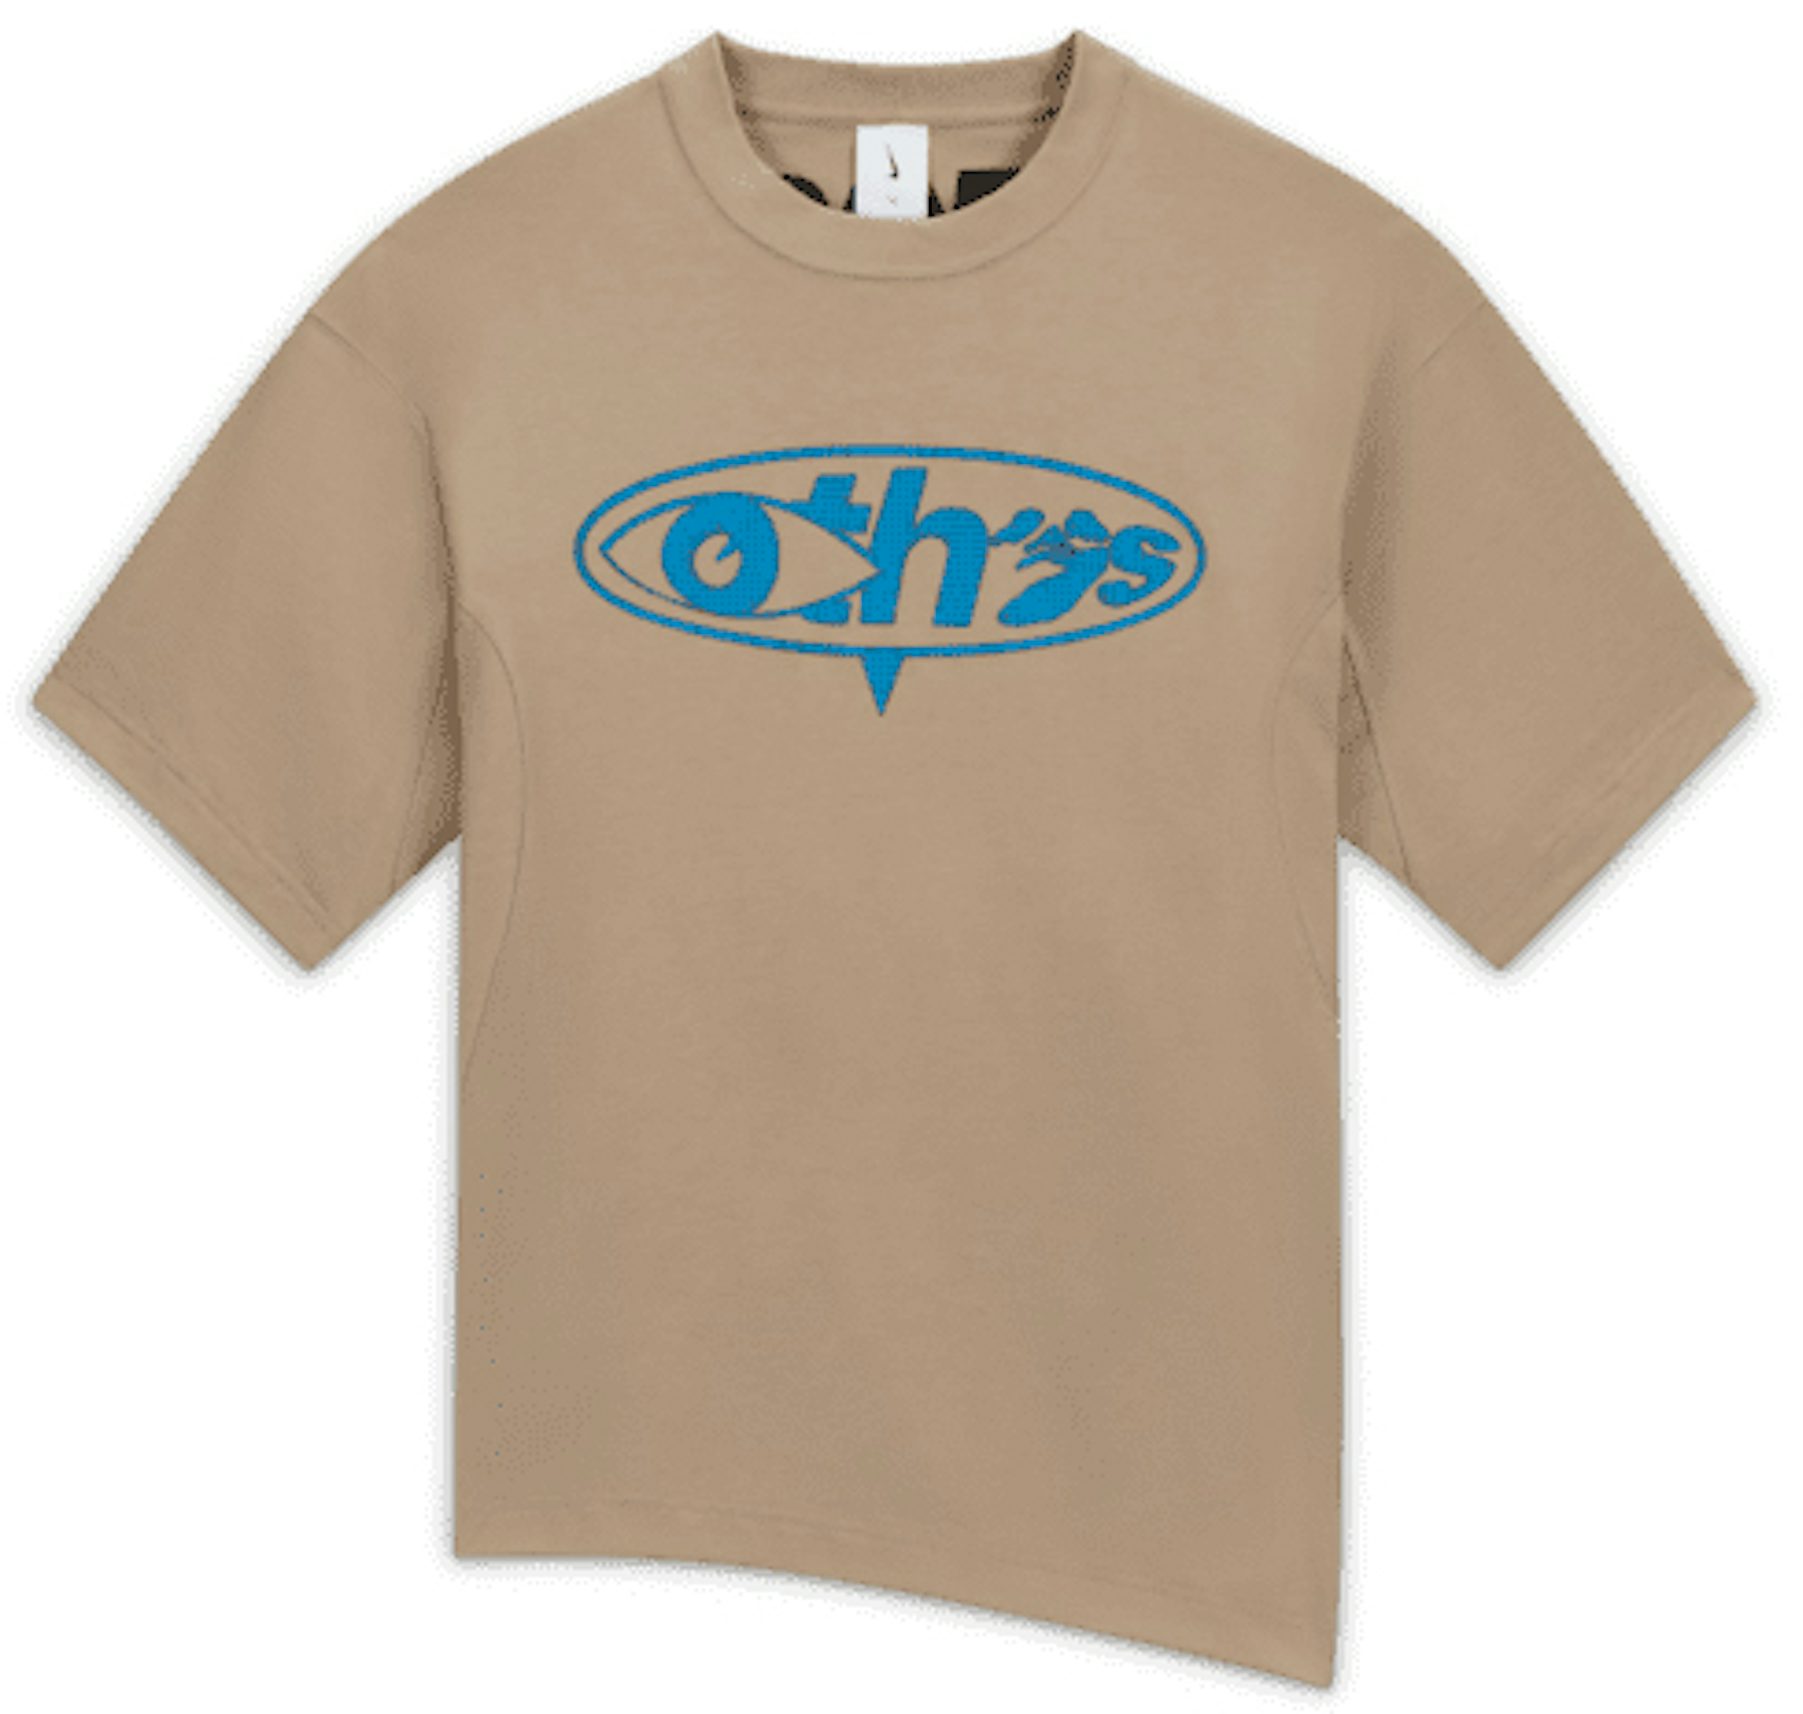 Off-White c/o Virgil Abloh Women's Big Logo Opposite Over Tee - Blue - T-shirts